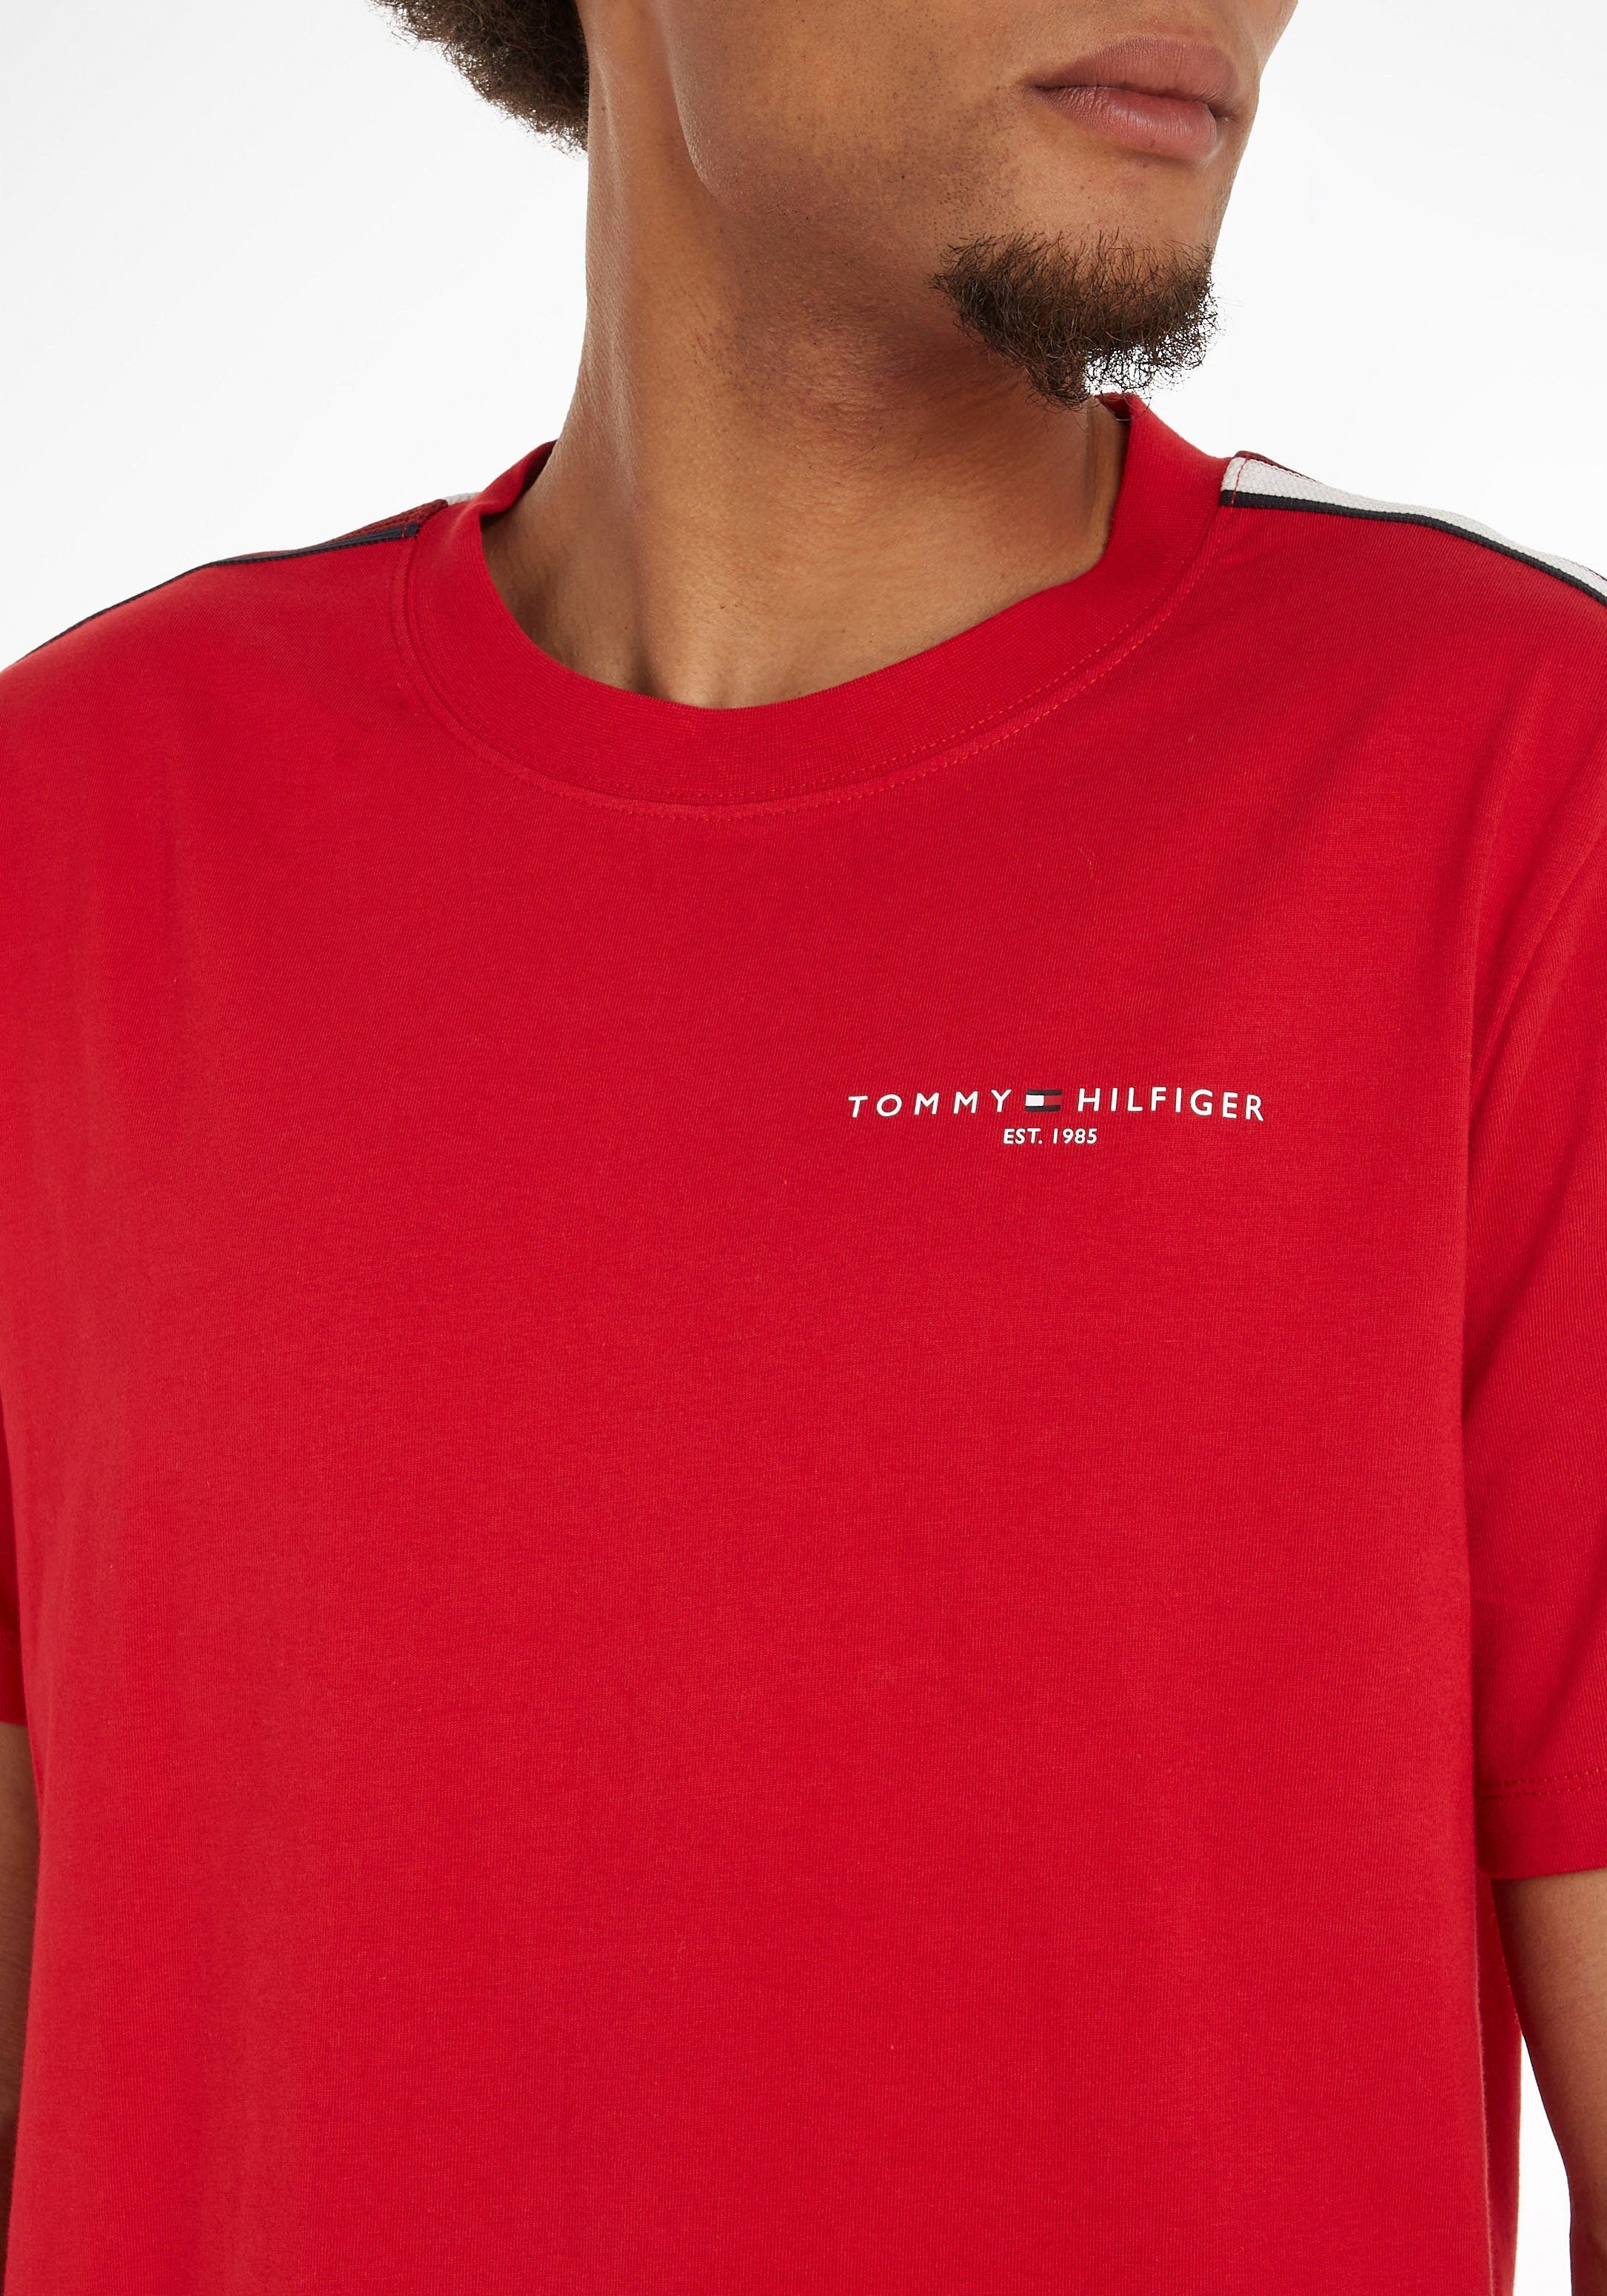 Streifen mit Red Rundhalsshirt in beiden GLOBAL Hilfiger Tommy an TEE Primary TH-Farben STRIPE PREP Ärmeln